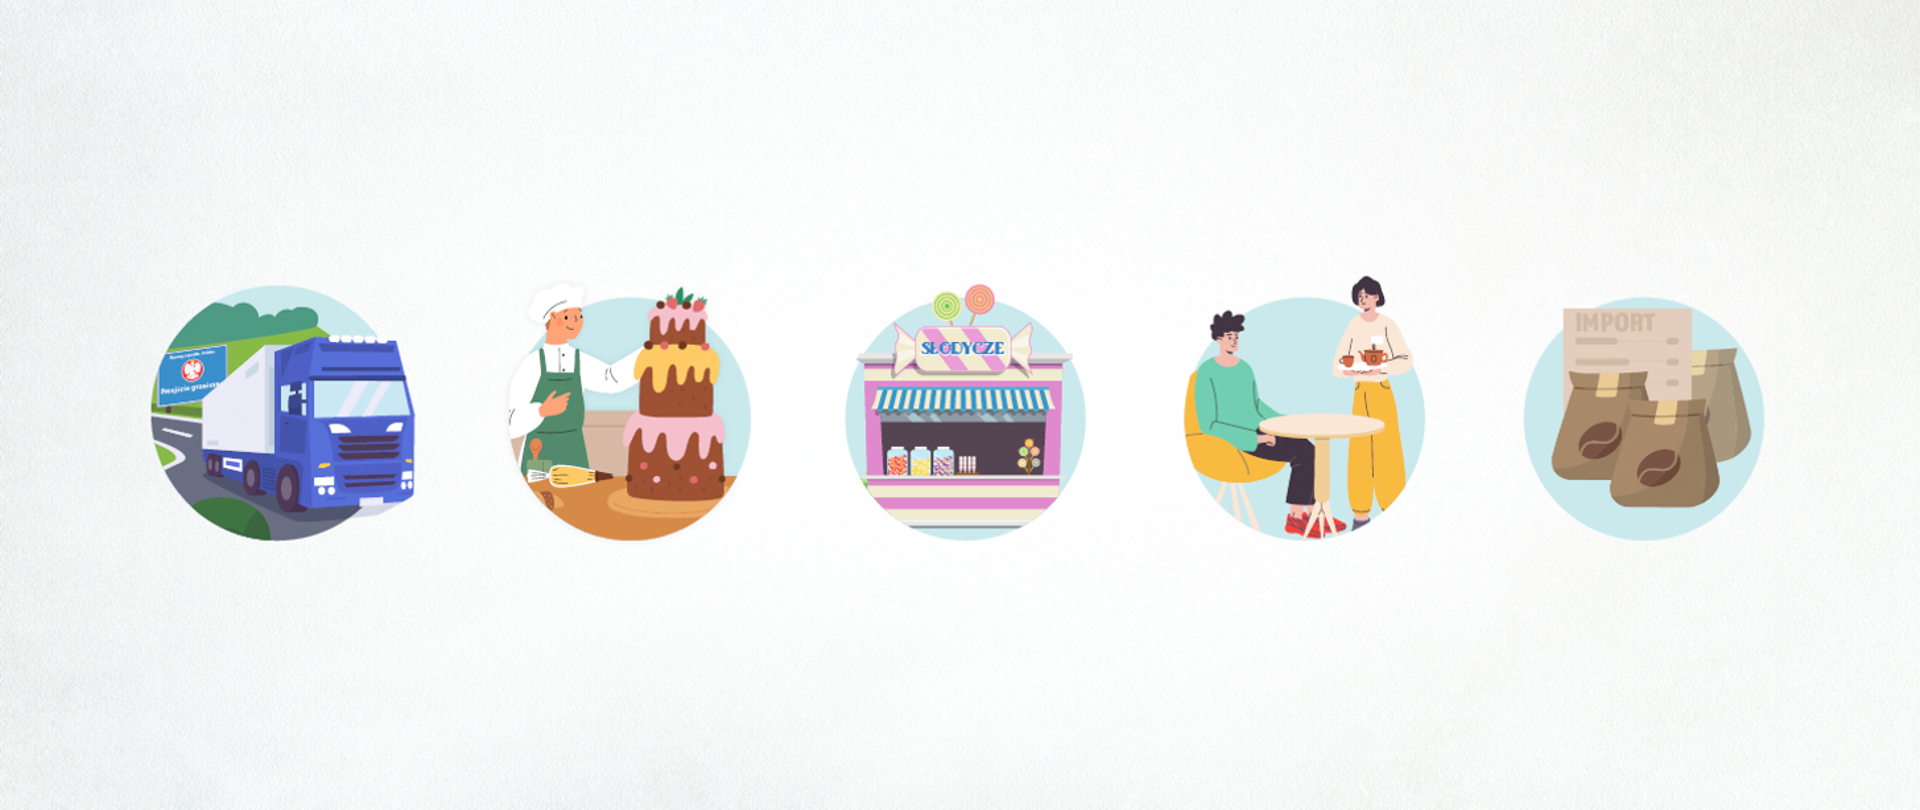 Na zdjęciu znajduje się pięć okrągłych grafik. Pierwsza od lewej przedstawia samochód dostawczy, kolejna cukiernika i tort, trzecia sklep ze słodyczami, czwarta mężczyznę siedzącego przy stoliku i kobietę stojąca z taca w ręce, ostatnia torby z kawą.